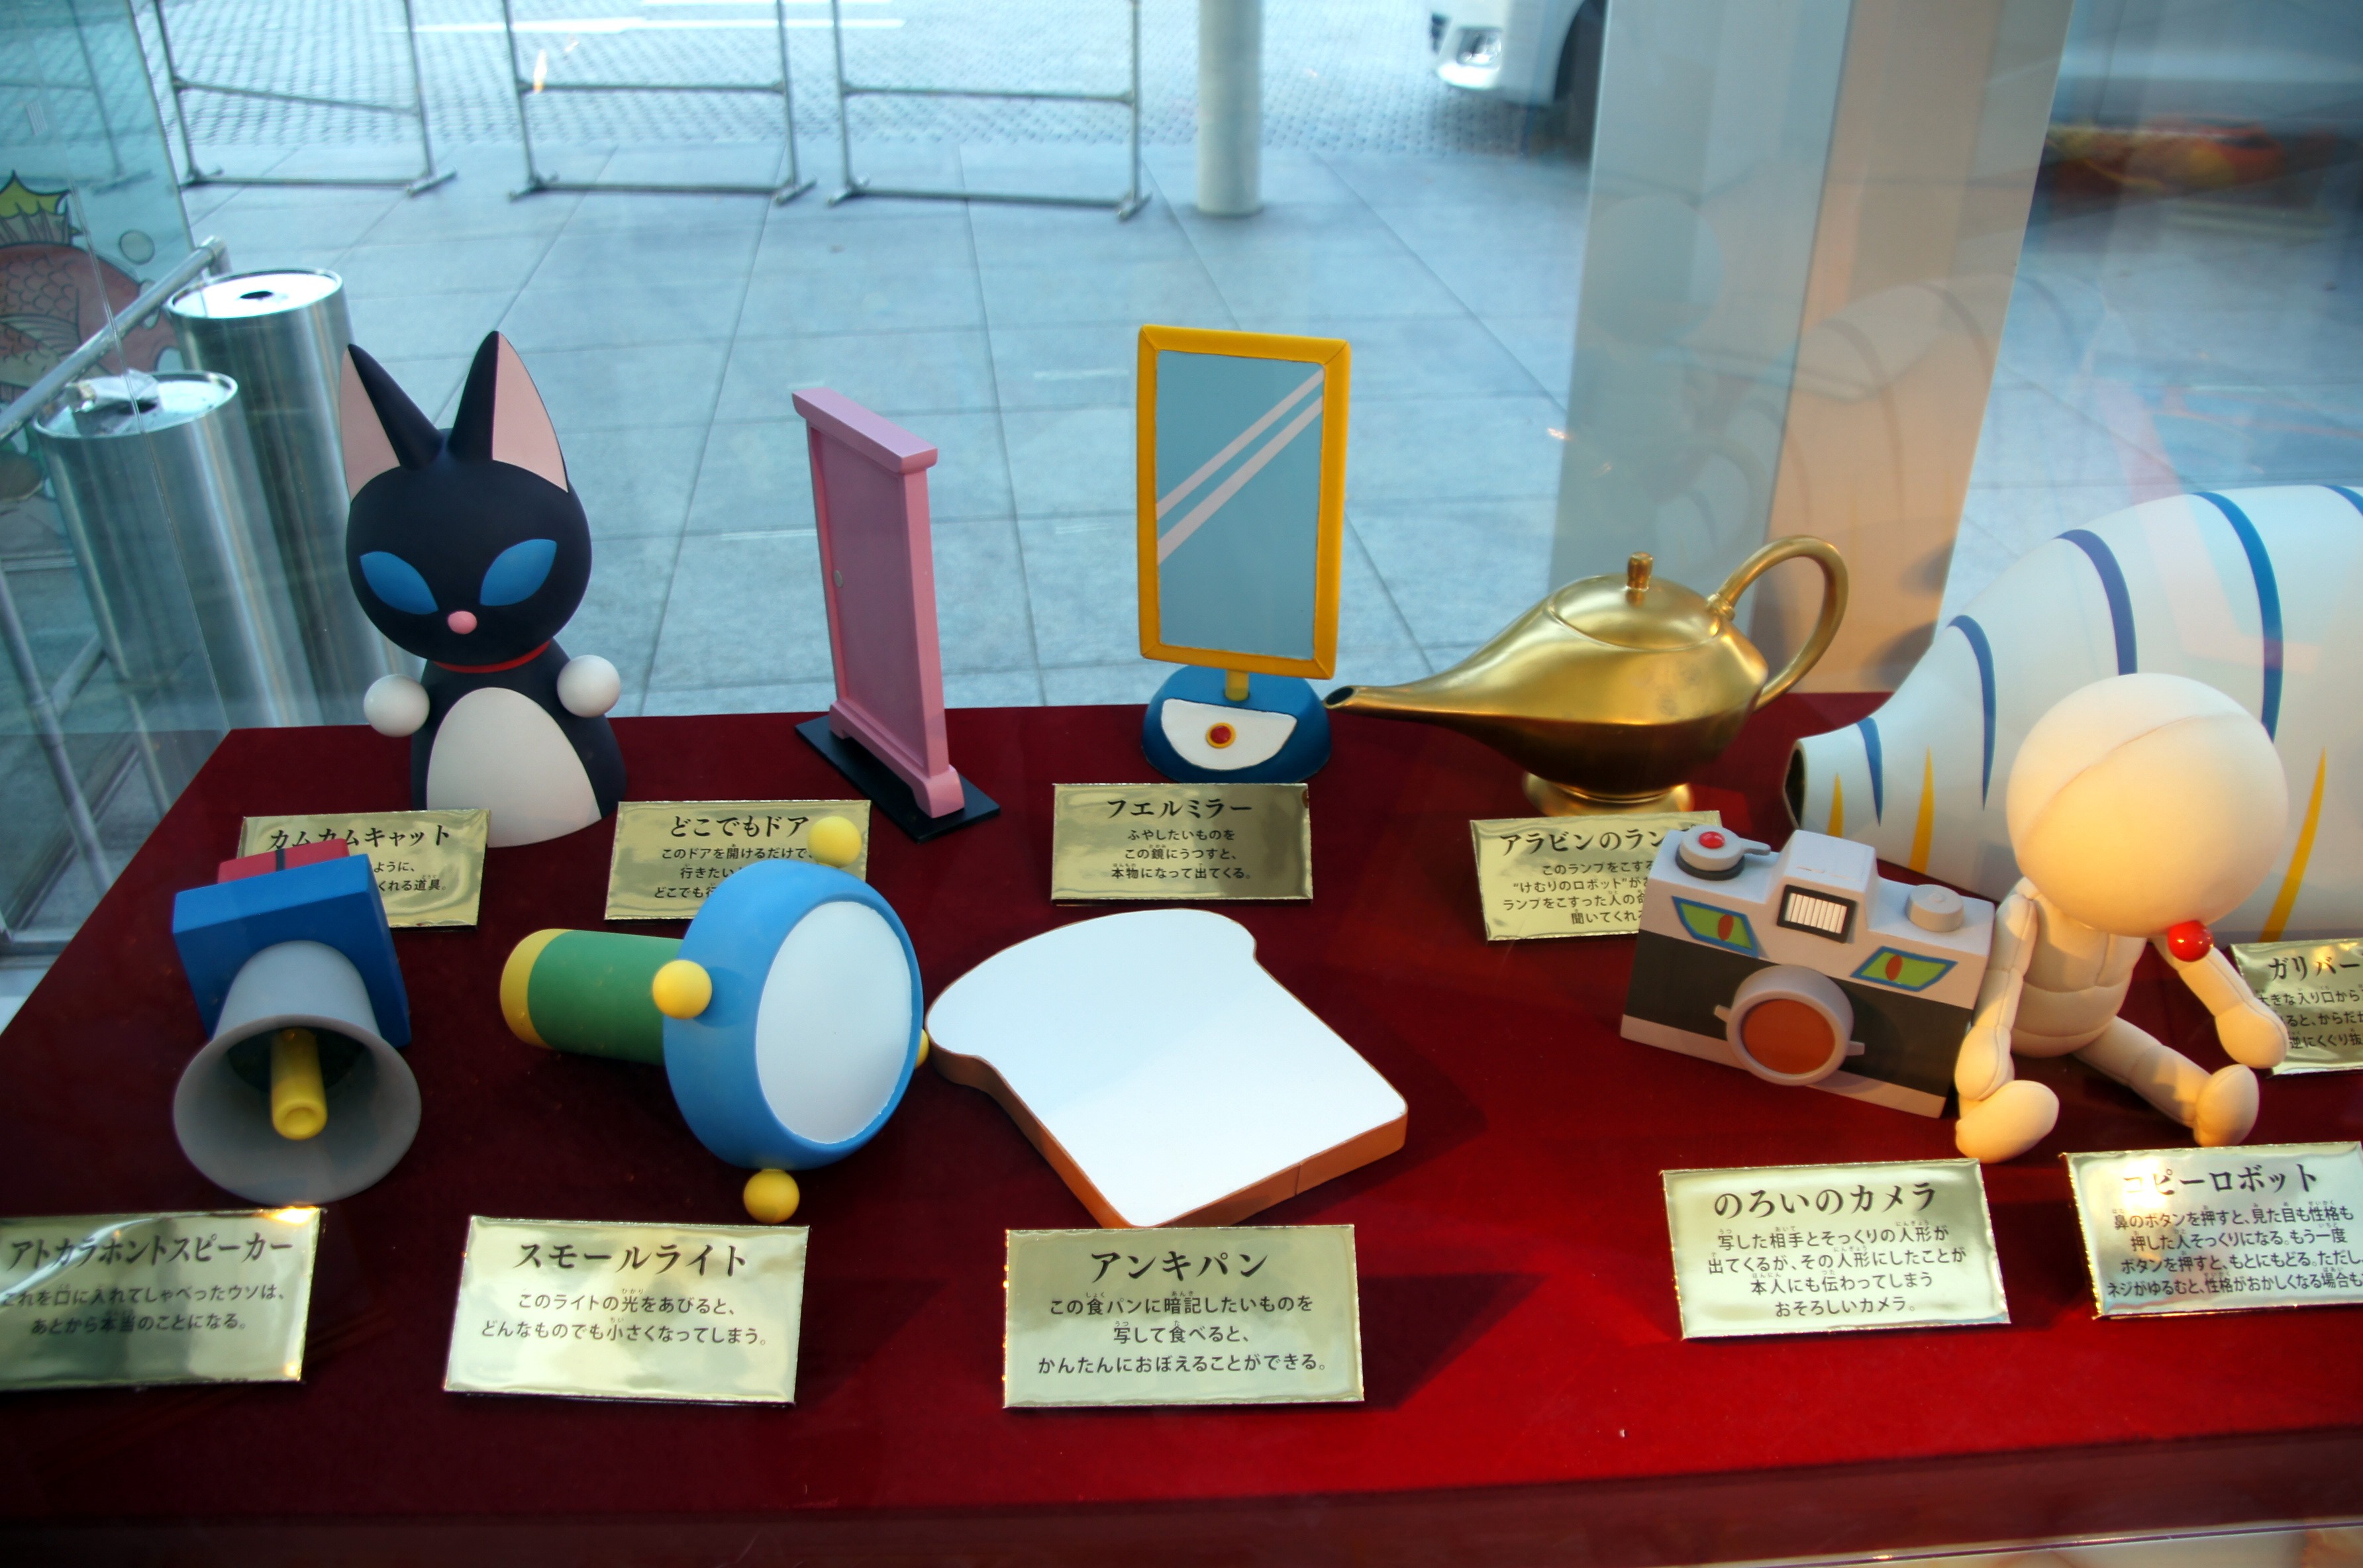 Visiting Doraemon At The Asahi Tv Tower Rippongi Tokyo Visions Of Travel